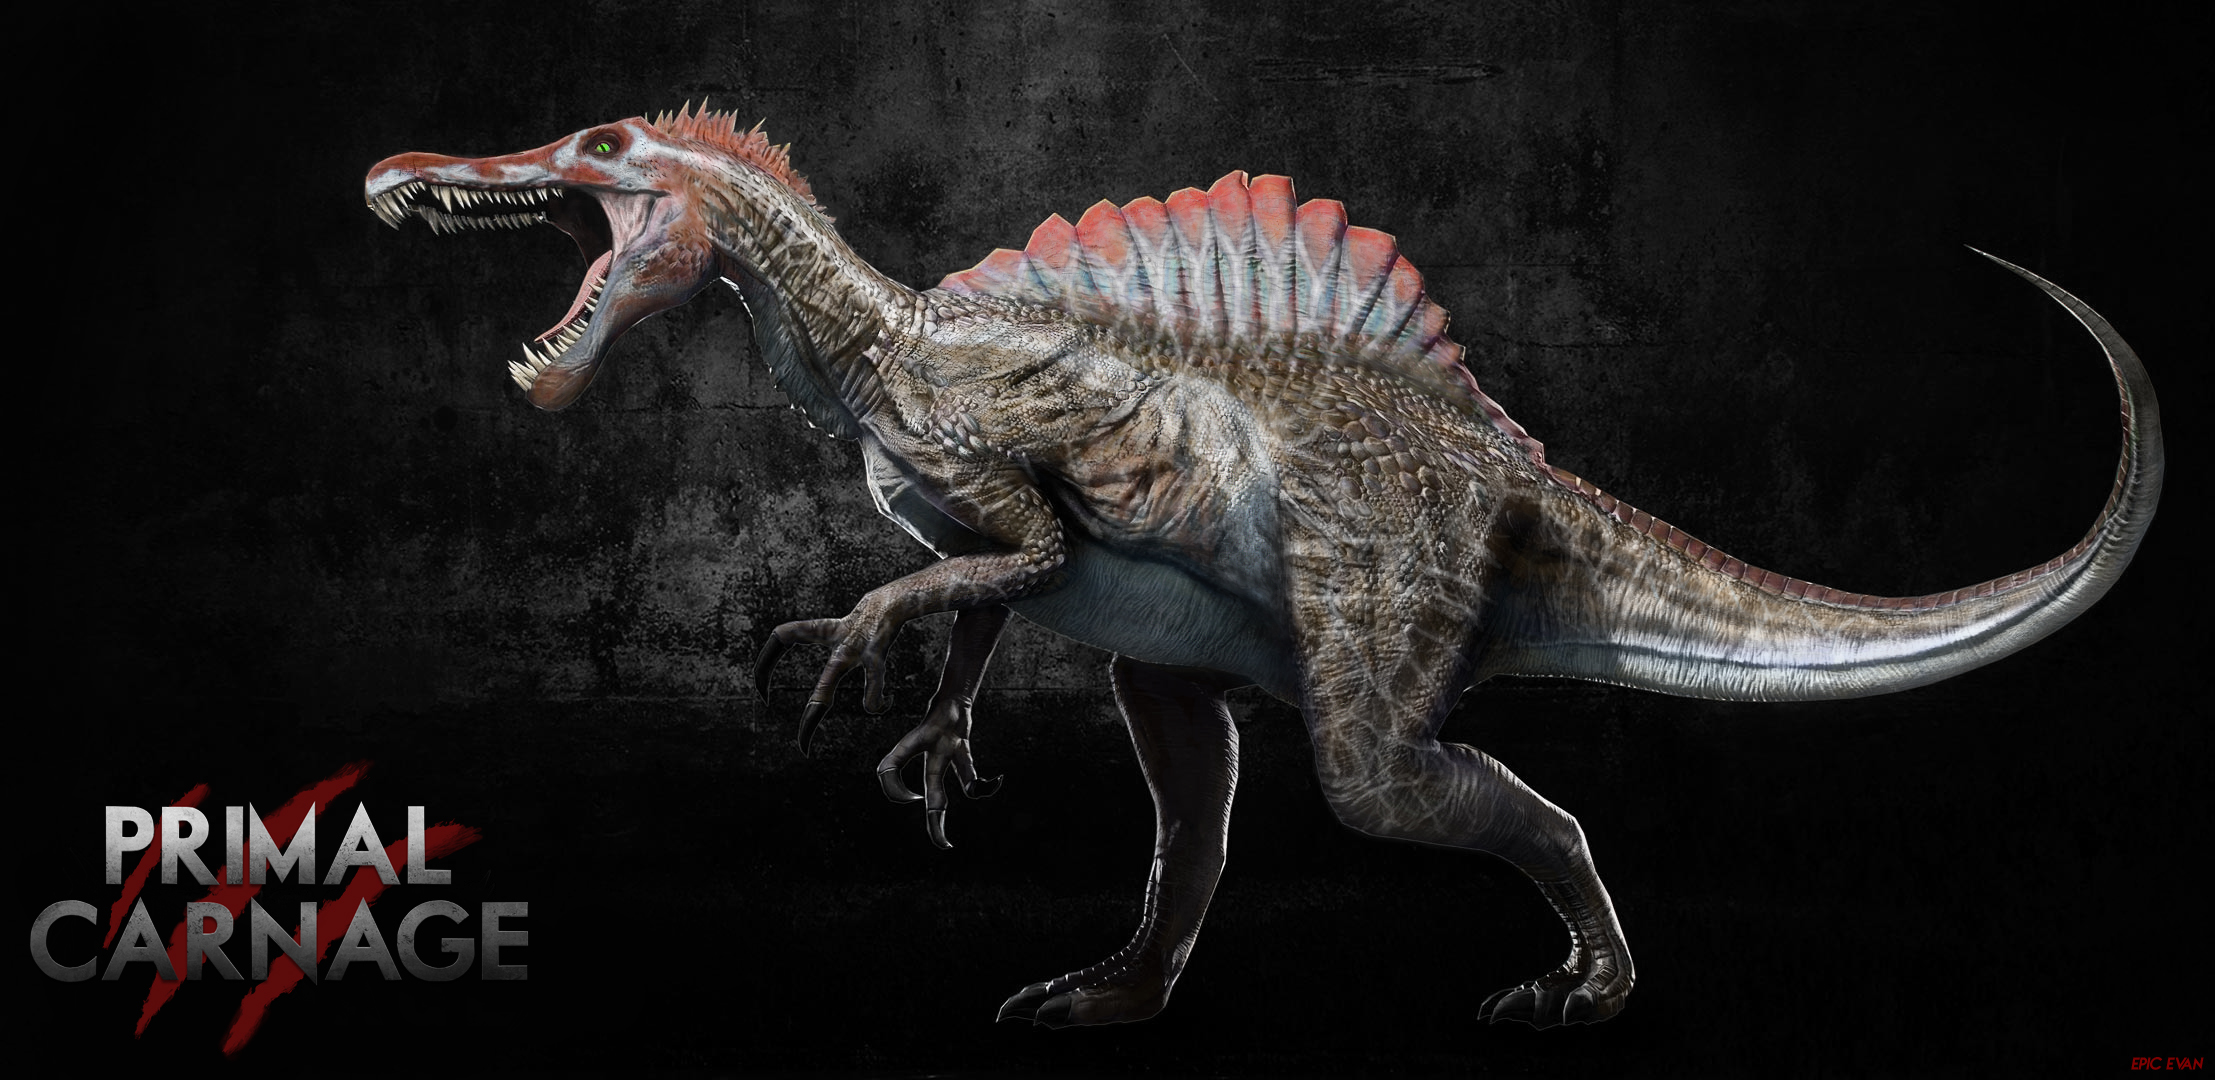 Primal Carnage Reskin Jpiii Spinosaurus By Gandalf The Ghey On